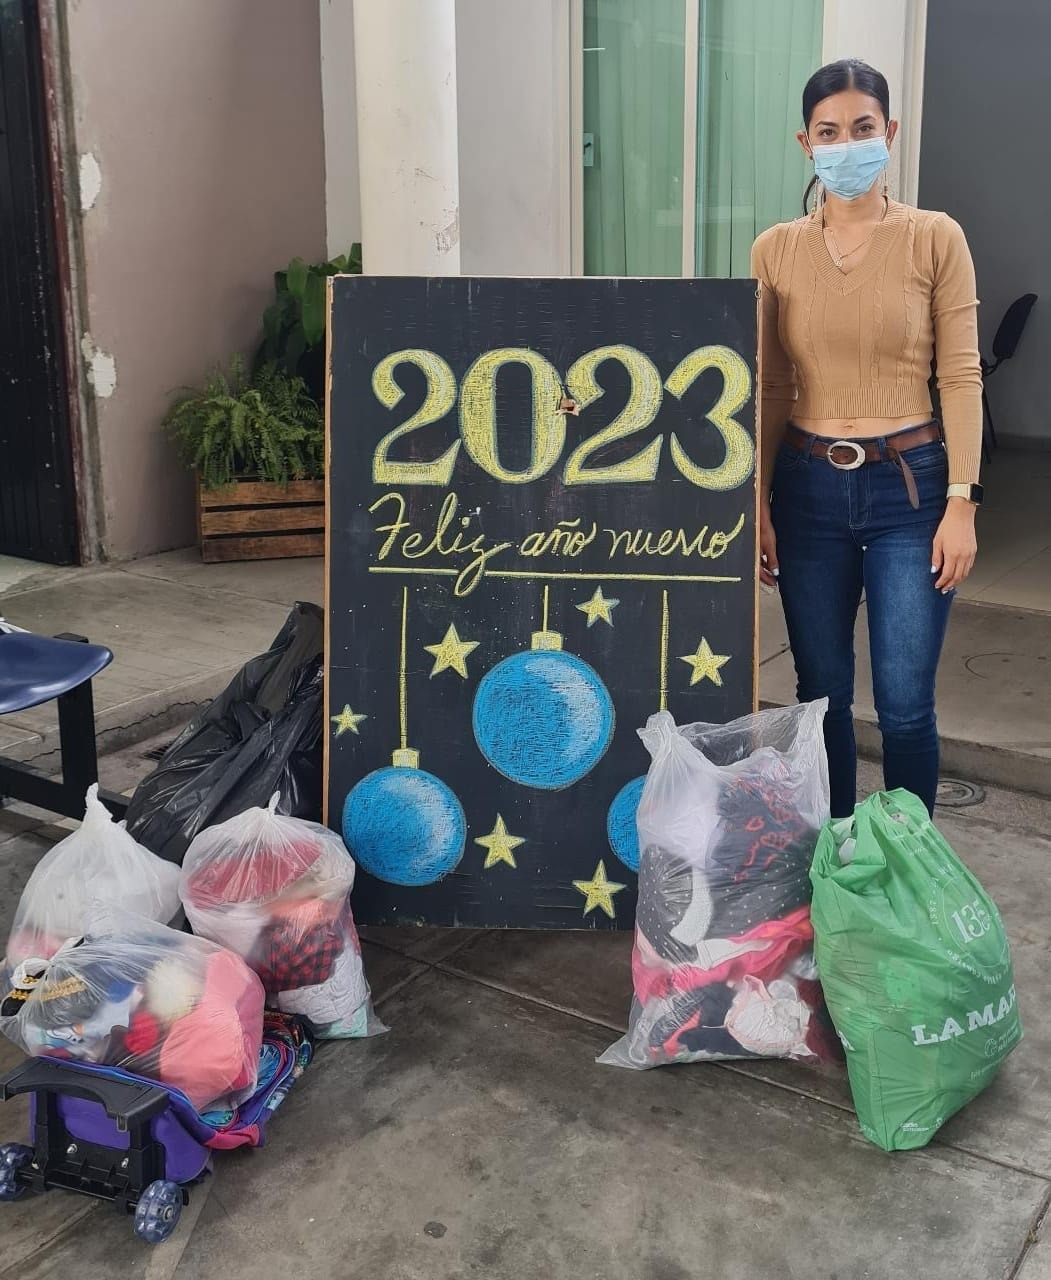 Ciudadana dona ropa en buen estado para familias vulnerables